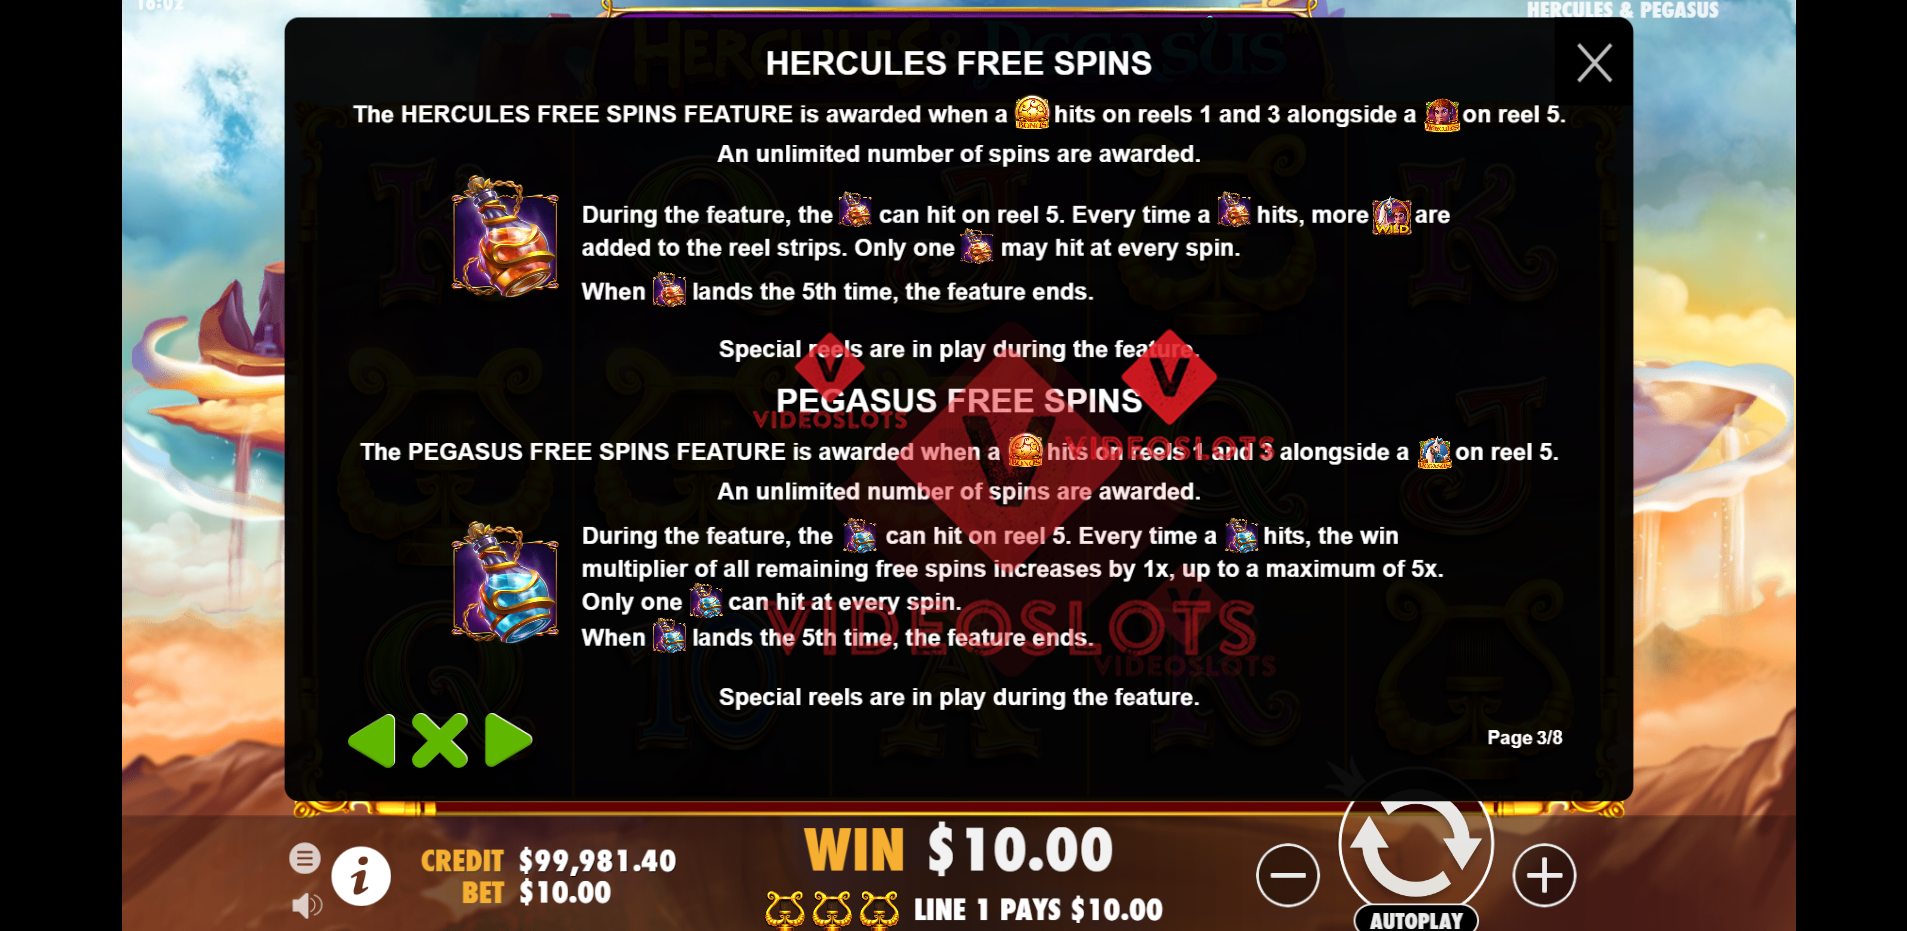 Game Rules for Hercules and Pegasus slot by Pragmatic Play